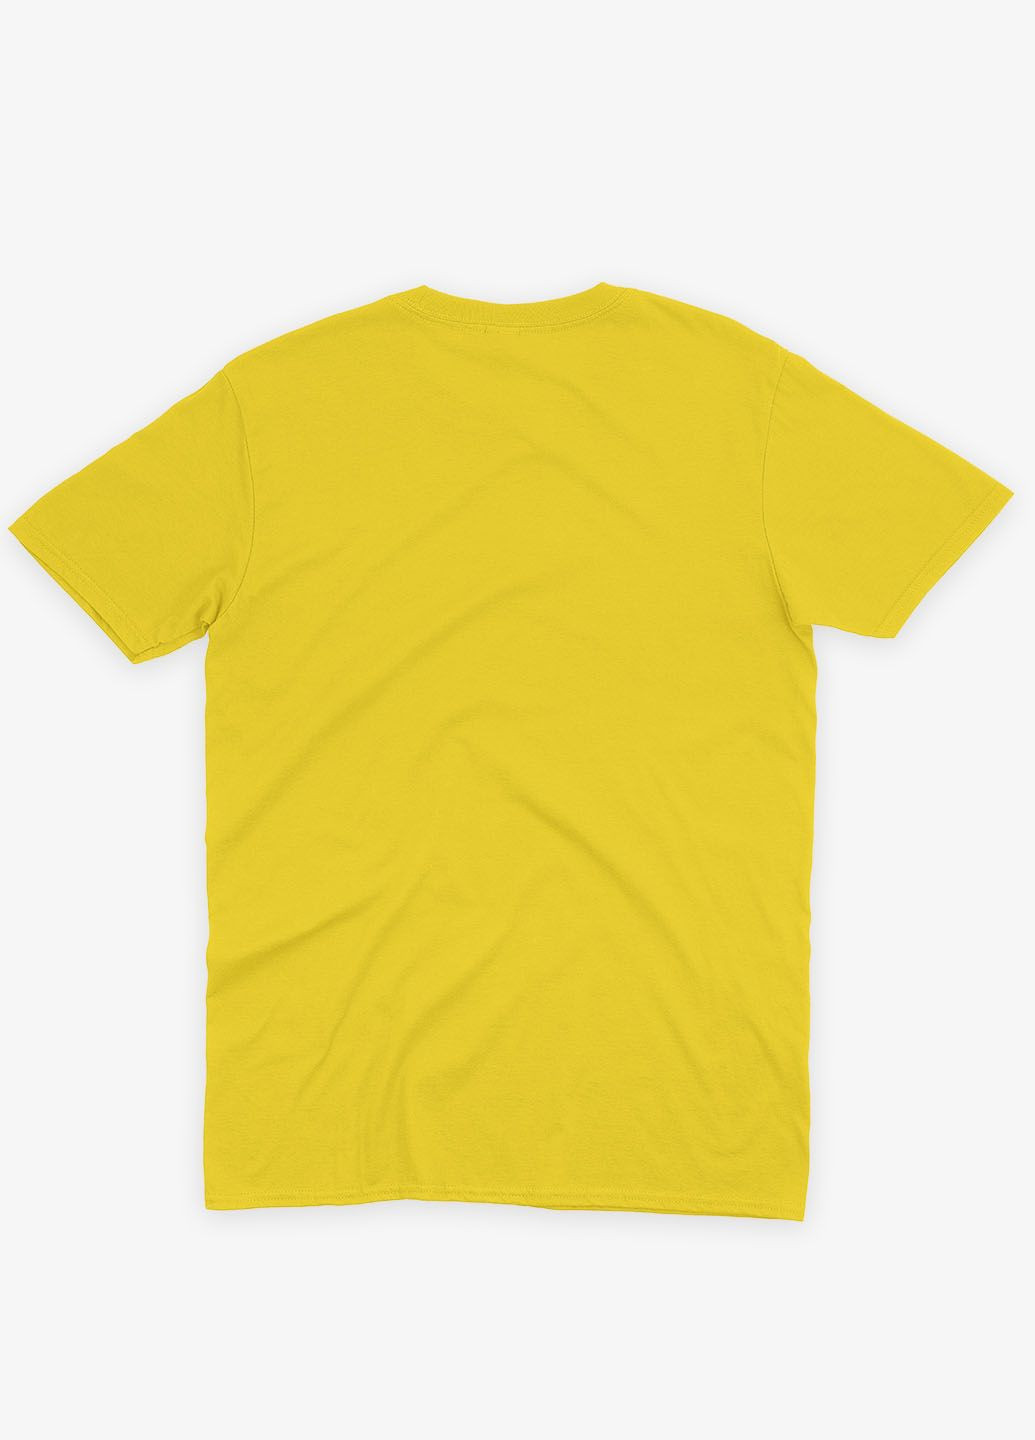 Желтая демисезонная футболка для девочки с патриотическим принтом карта украины (ts001-1-sun-005-1-003-g) Modno